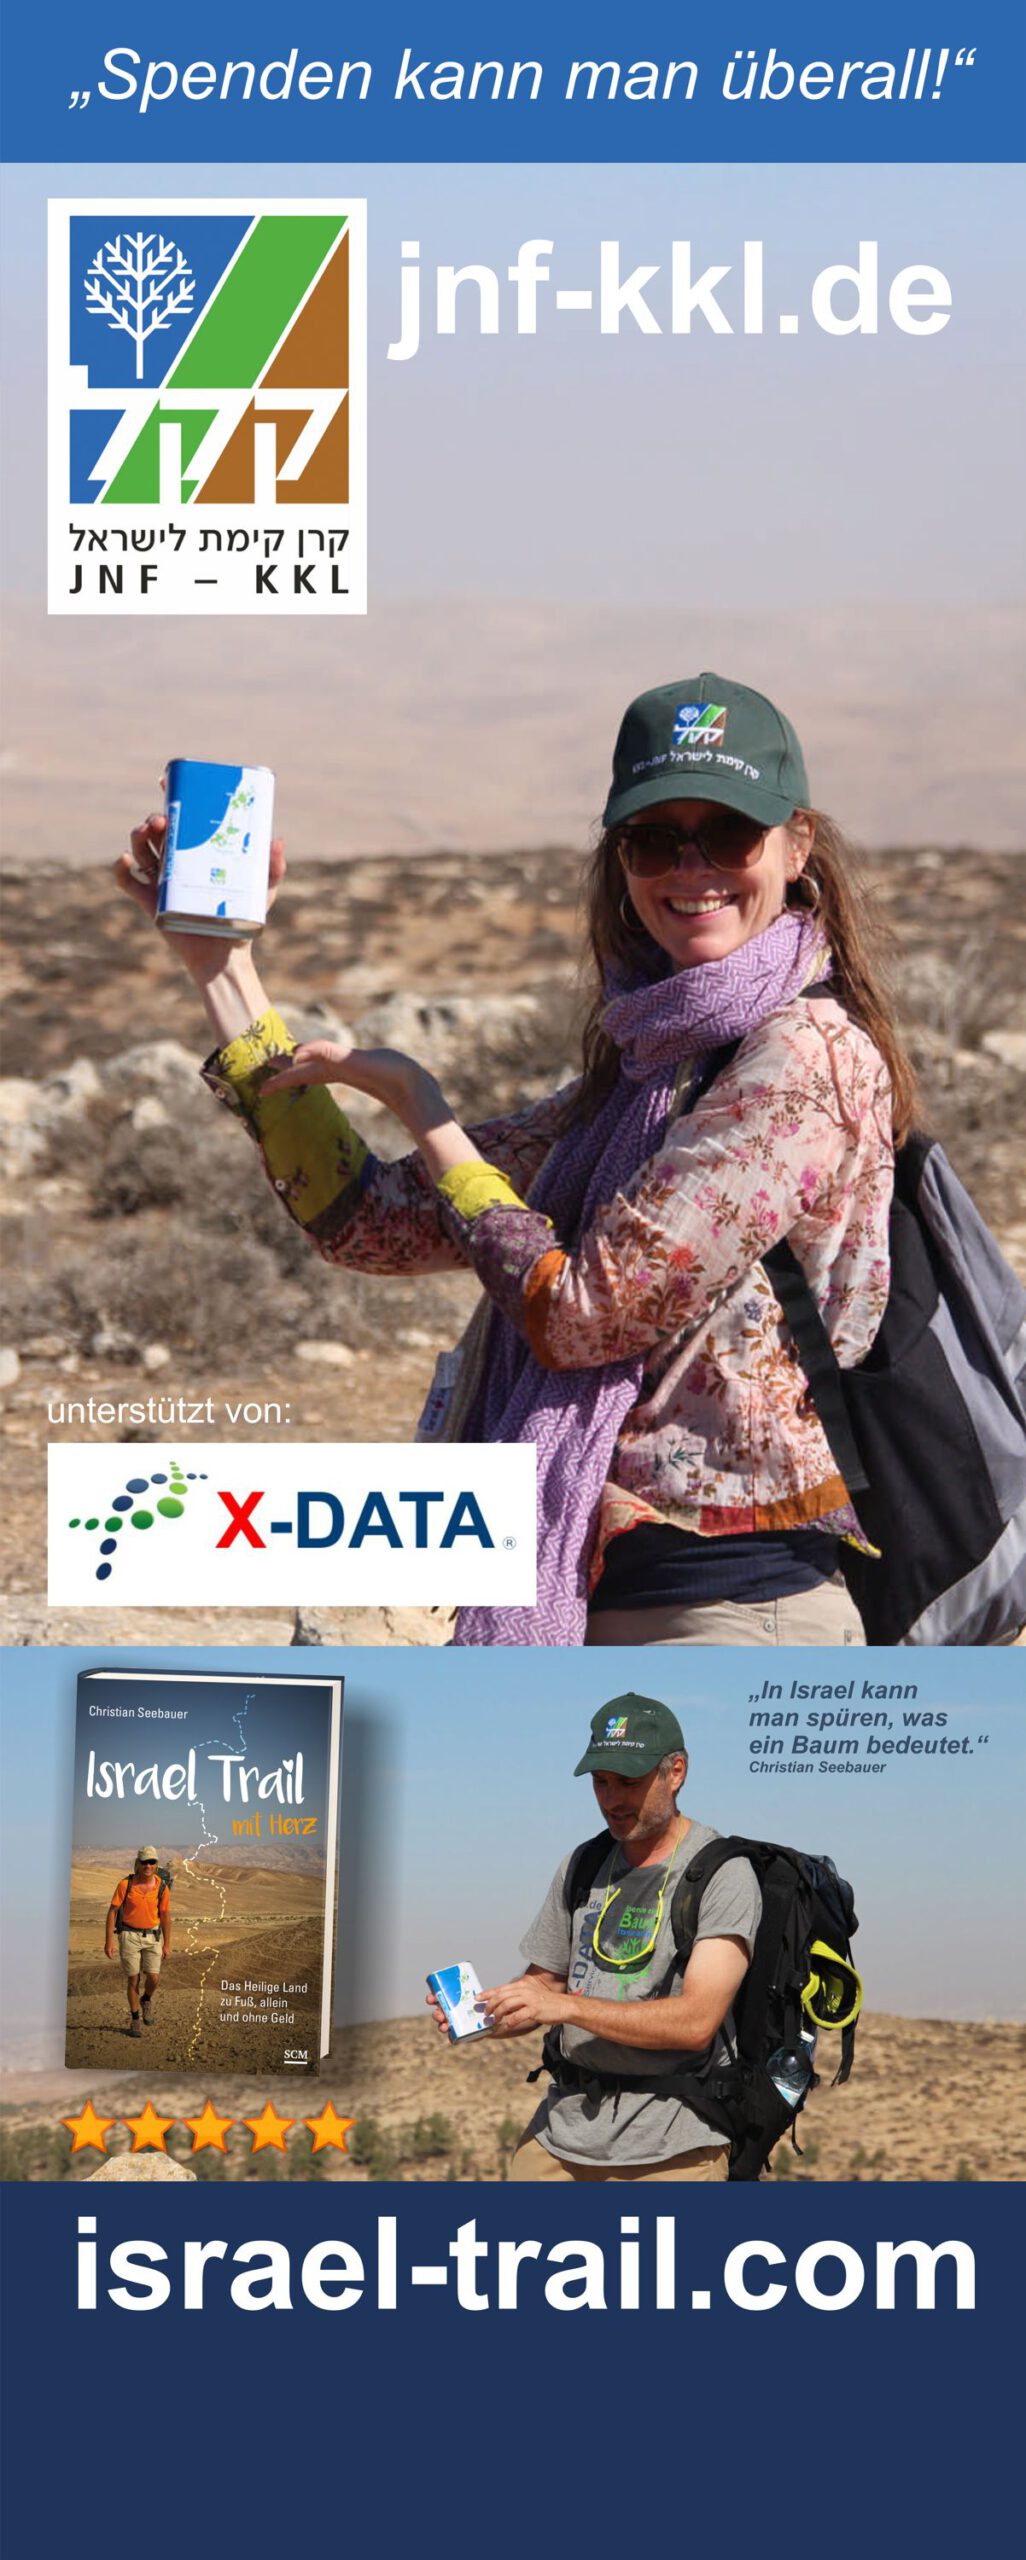 Rollup "Spenden kann man überall" - Spendenwerbung für Israels größte grüne Organisation, den JNF-KKL